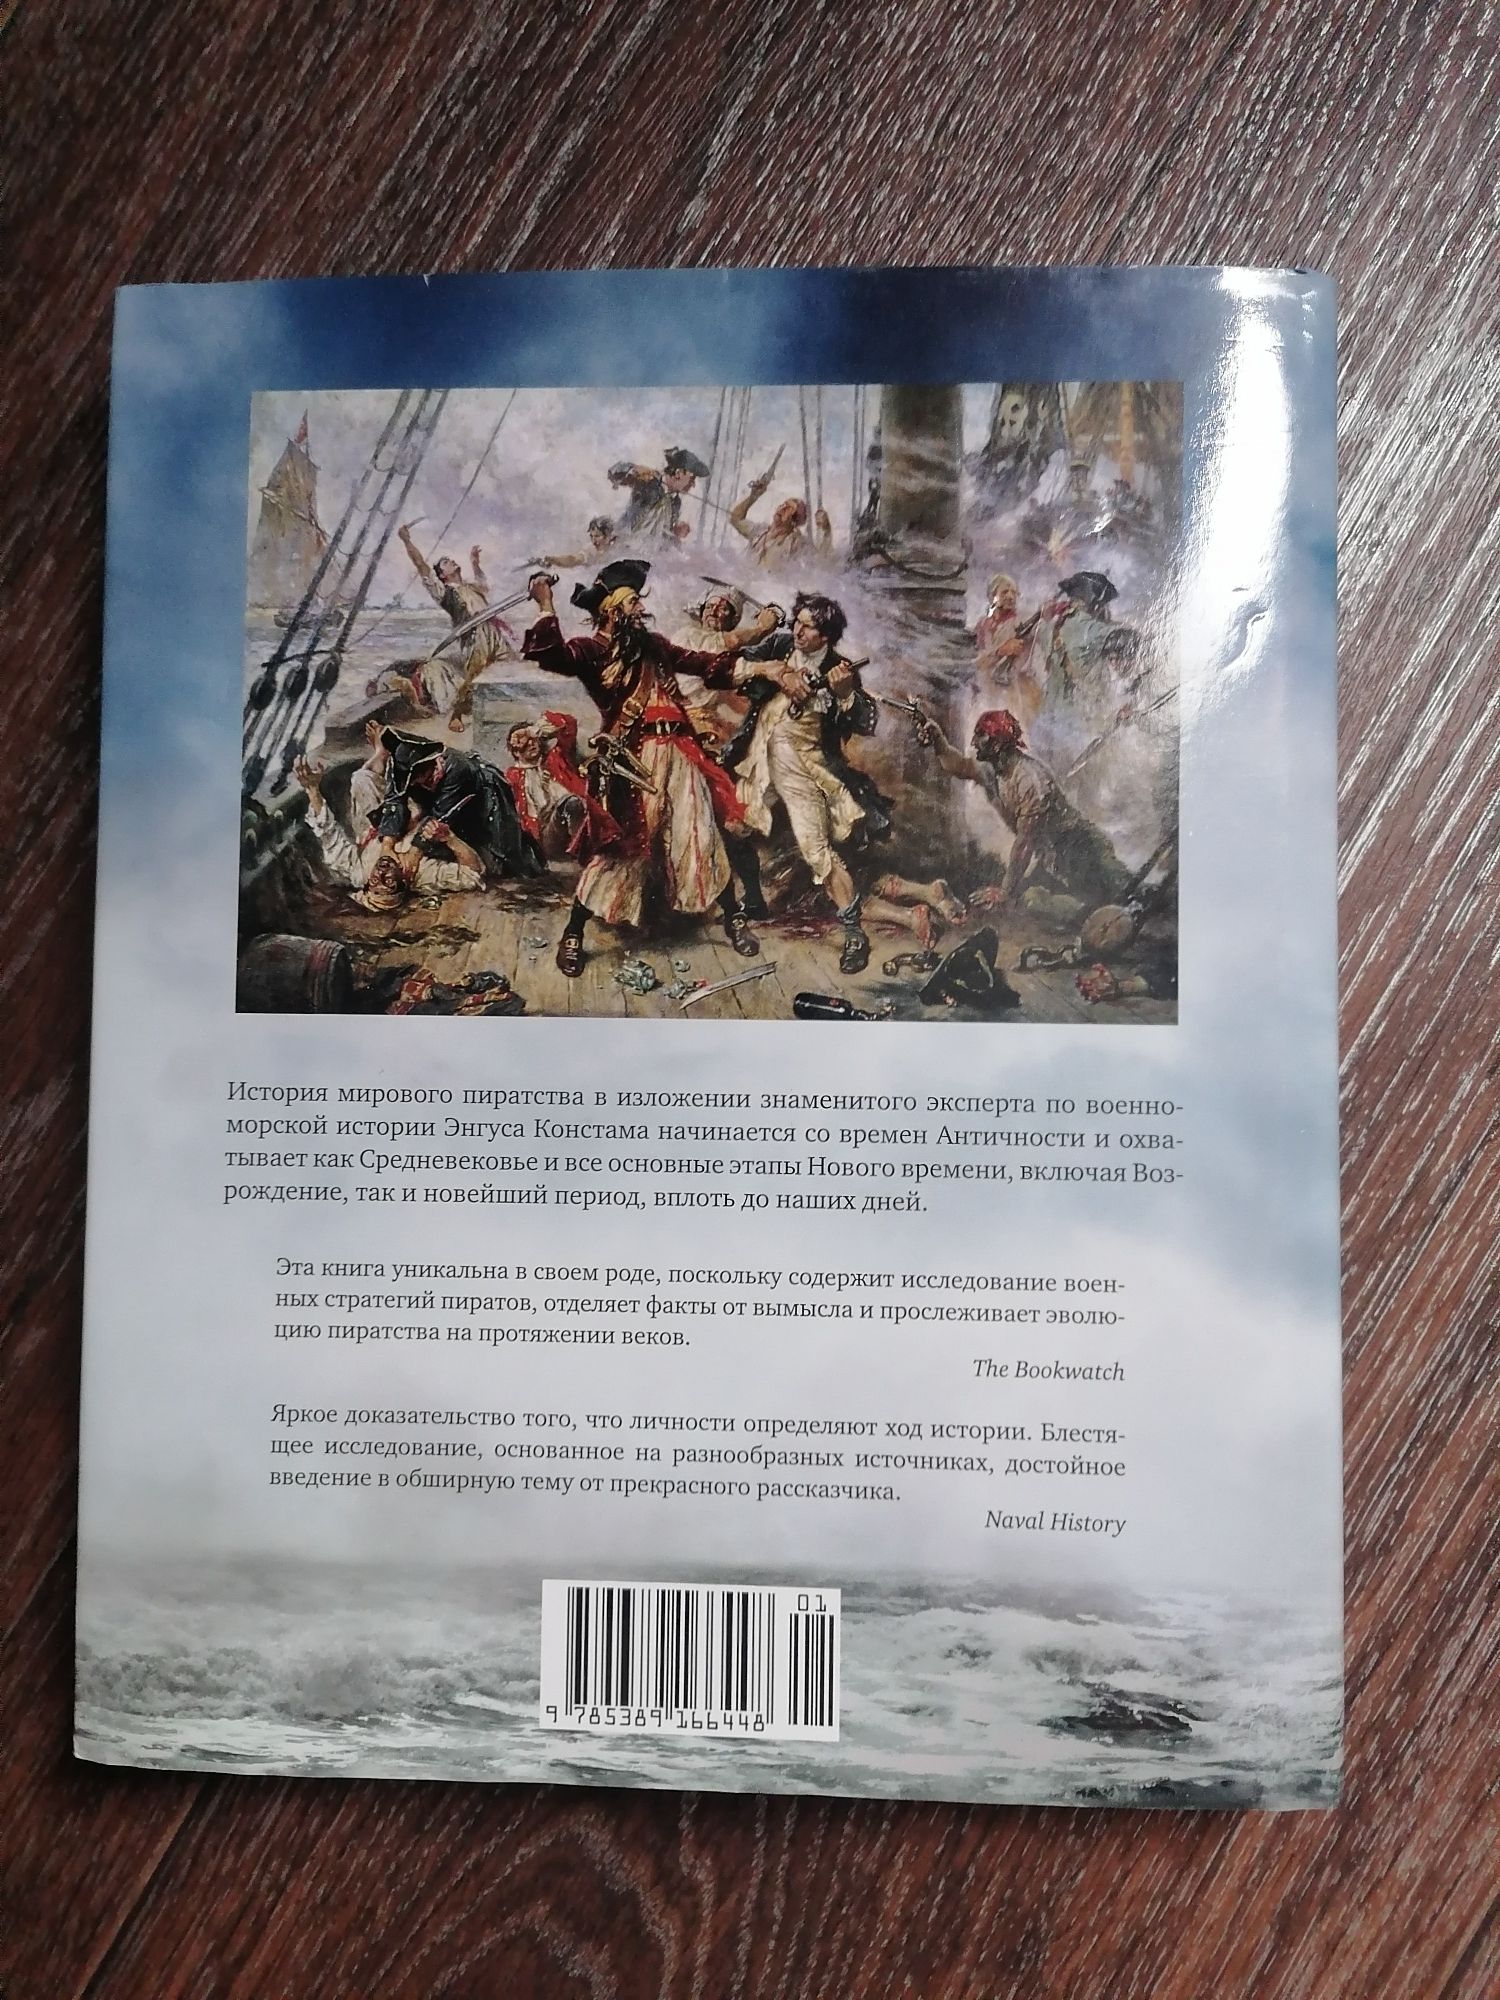 Пираты, книга Энгус Констам